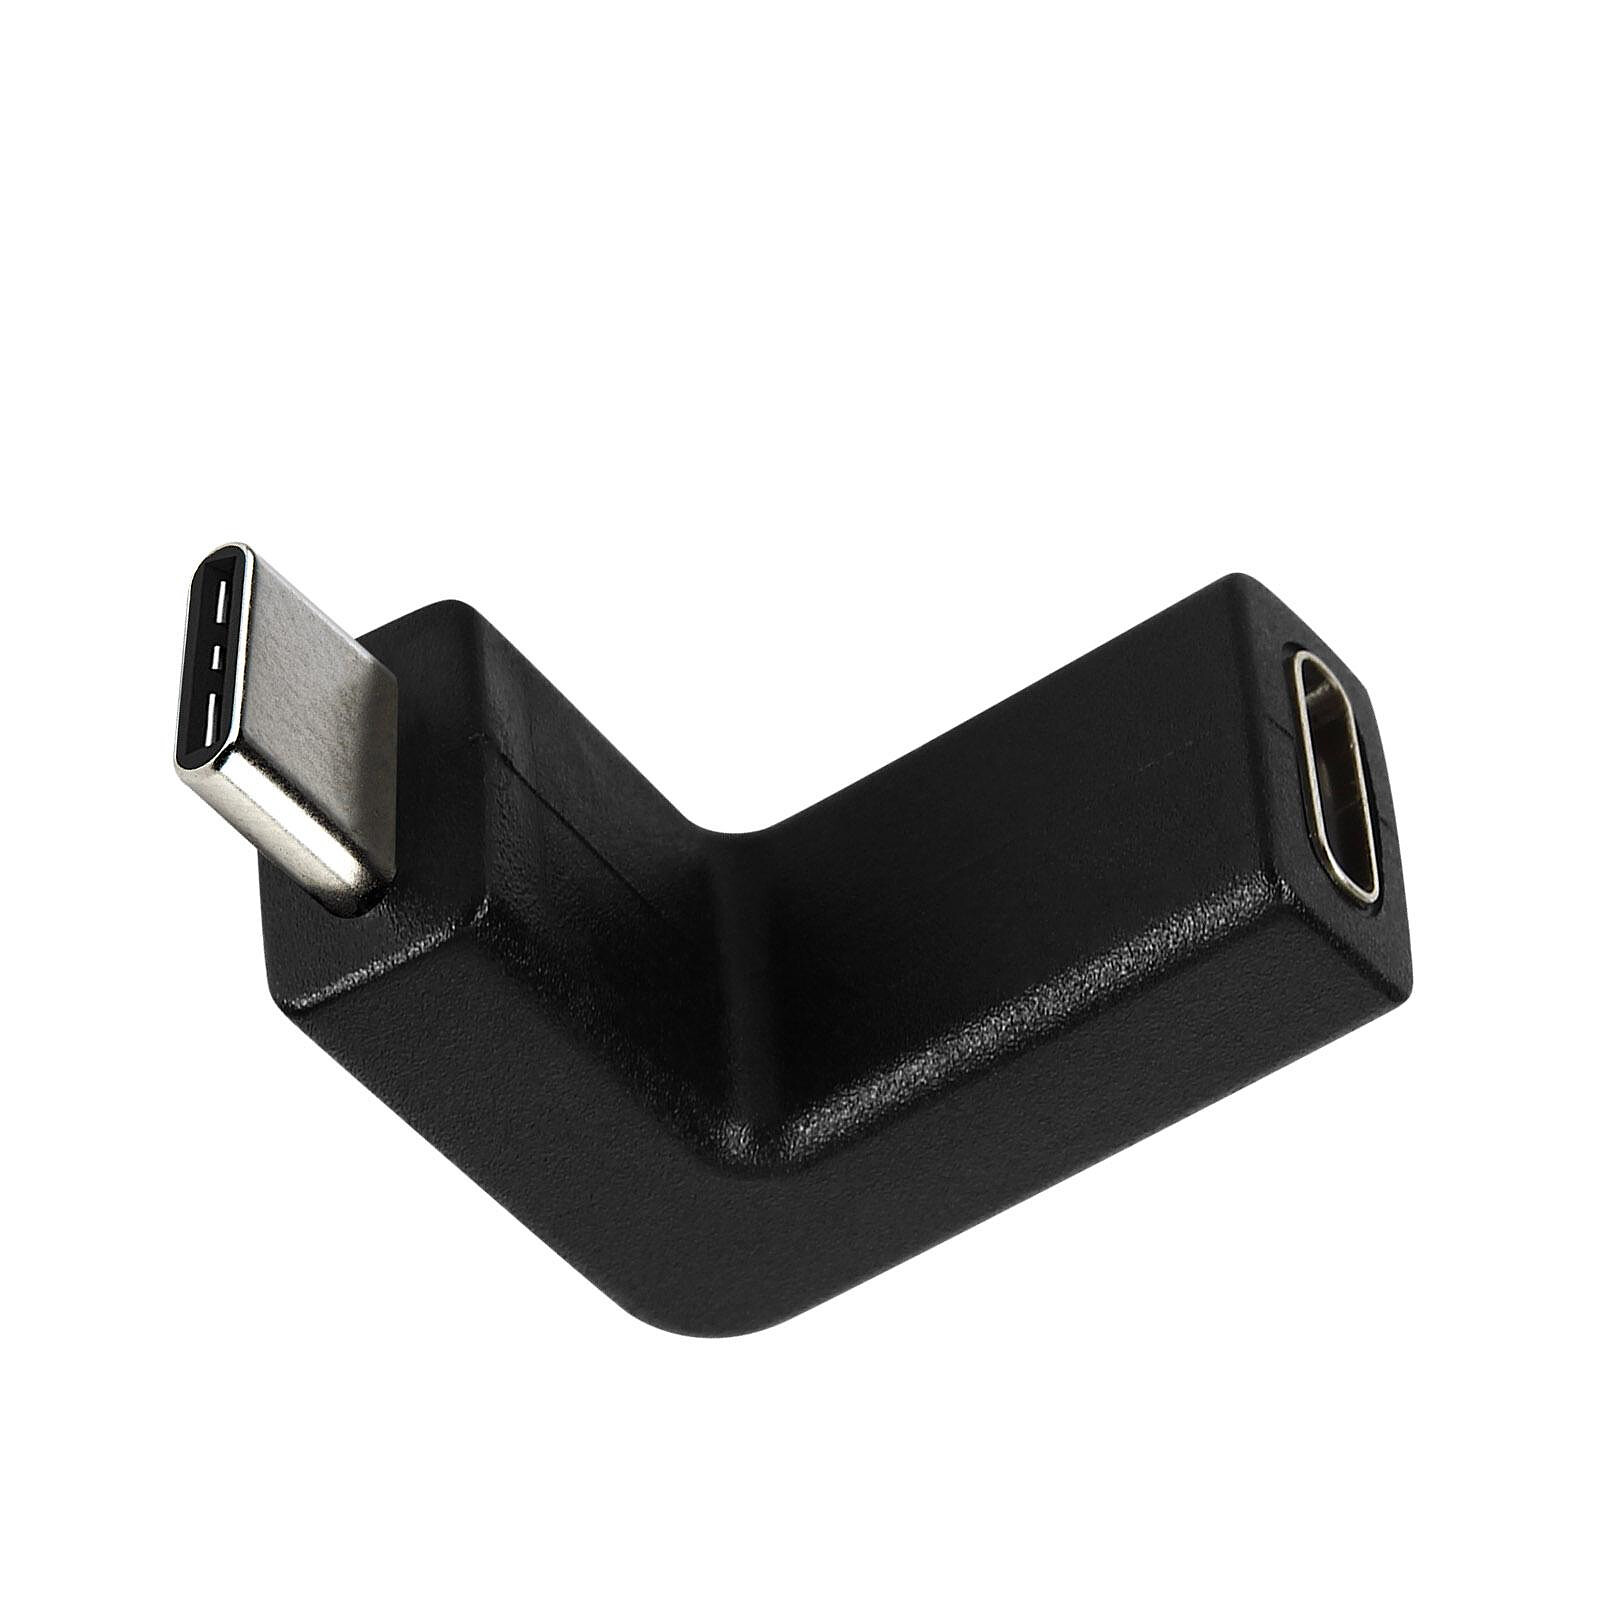 Avizar Câble spiralé USB-C vers USB-C + iPhone Lightning, Design coudé Noir  1,5m - Accessoires divers smartphone - LDLC